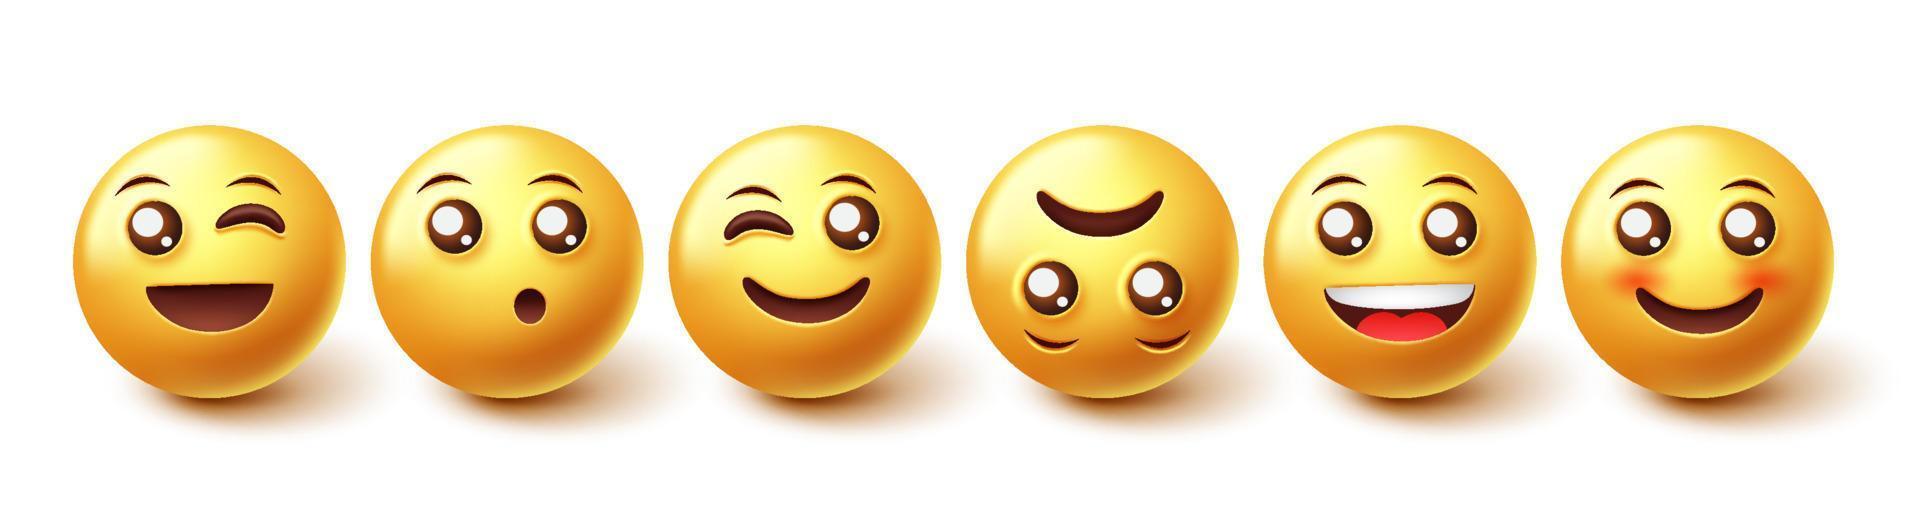 conjunto de vectores de caracteres emojis. Colección de reacciones de caras de emoji en caras de iconos amarillos aisladas en fondo blanco para elementos de diseño gráfico de personajes de emoticonos. ilustración vectorial.